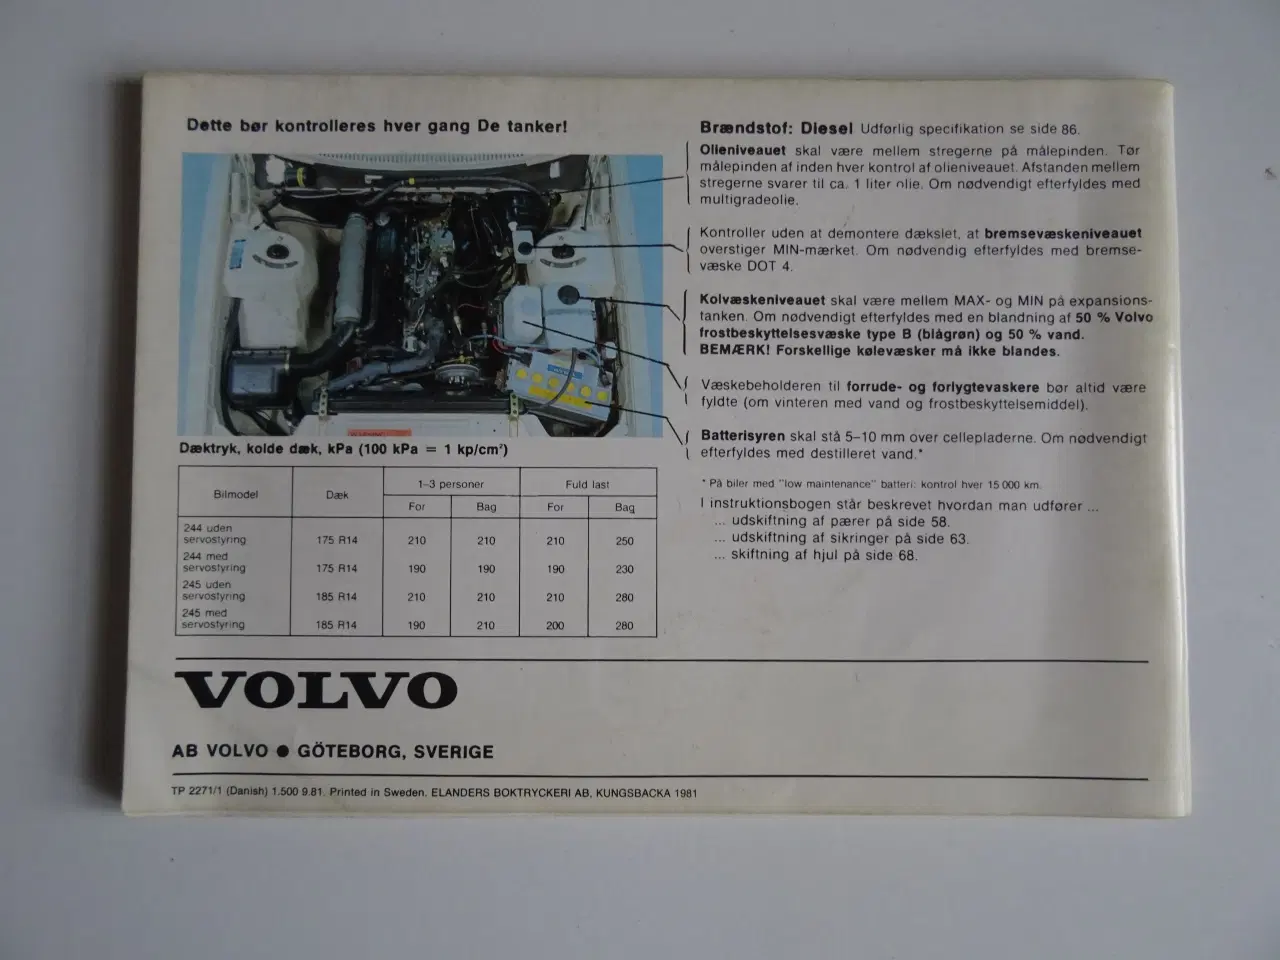 Billede 2 - Volvo 244-245 diesel model 1982 Instruktionsbog